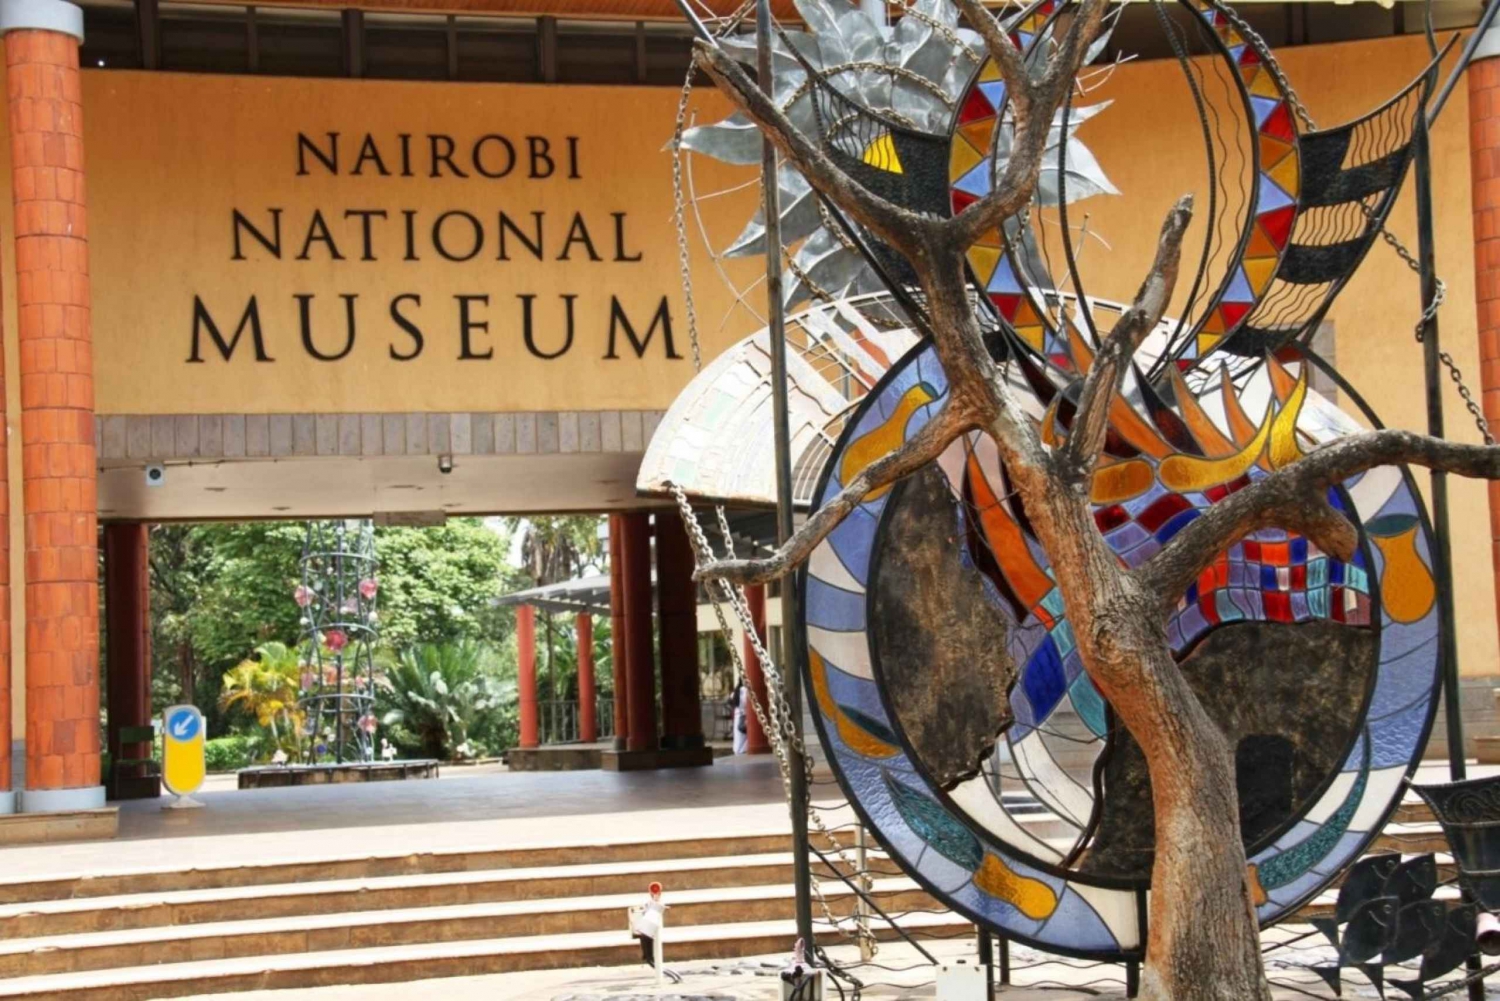 Nairobin lentoaseman välilasku: Nairobin kansallismuseon kiertoajelu